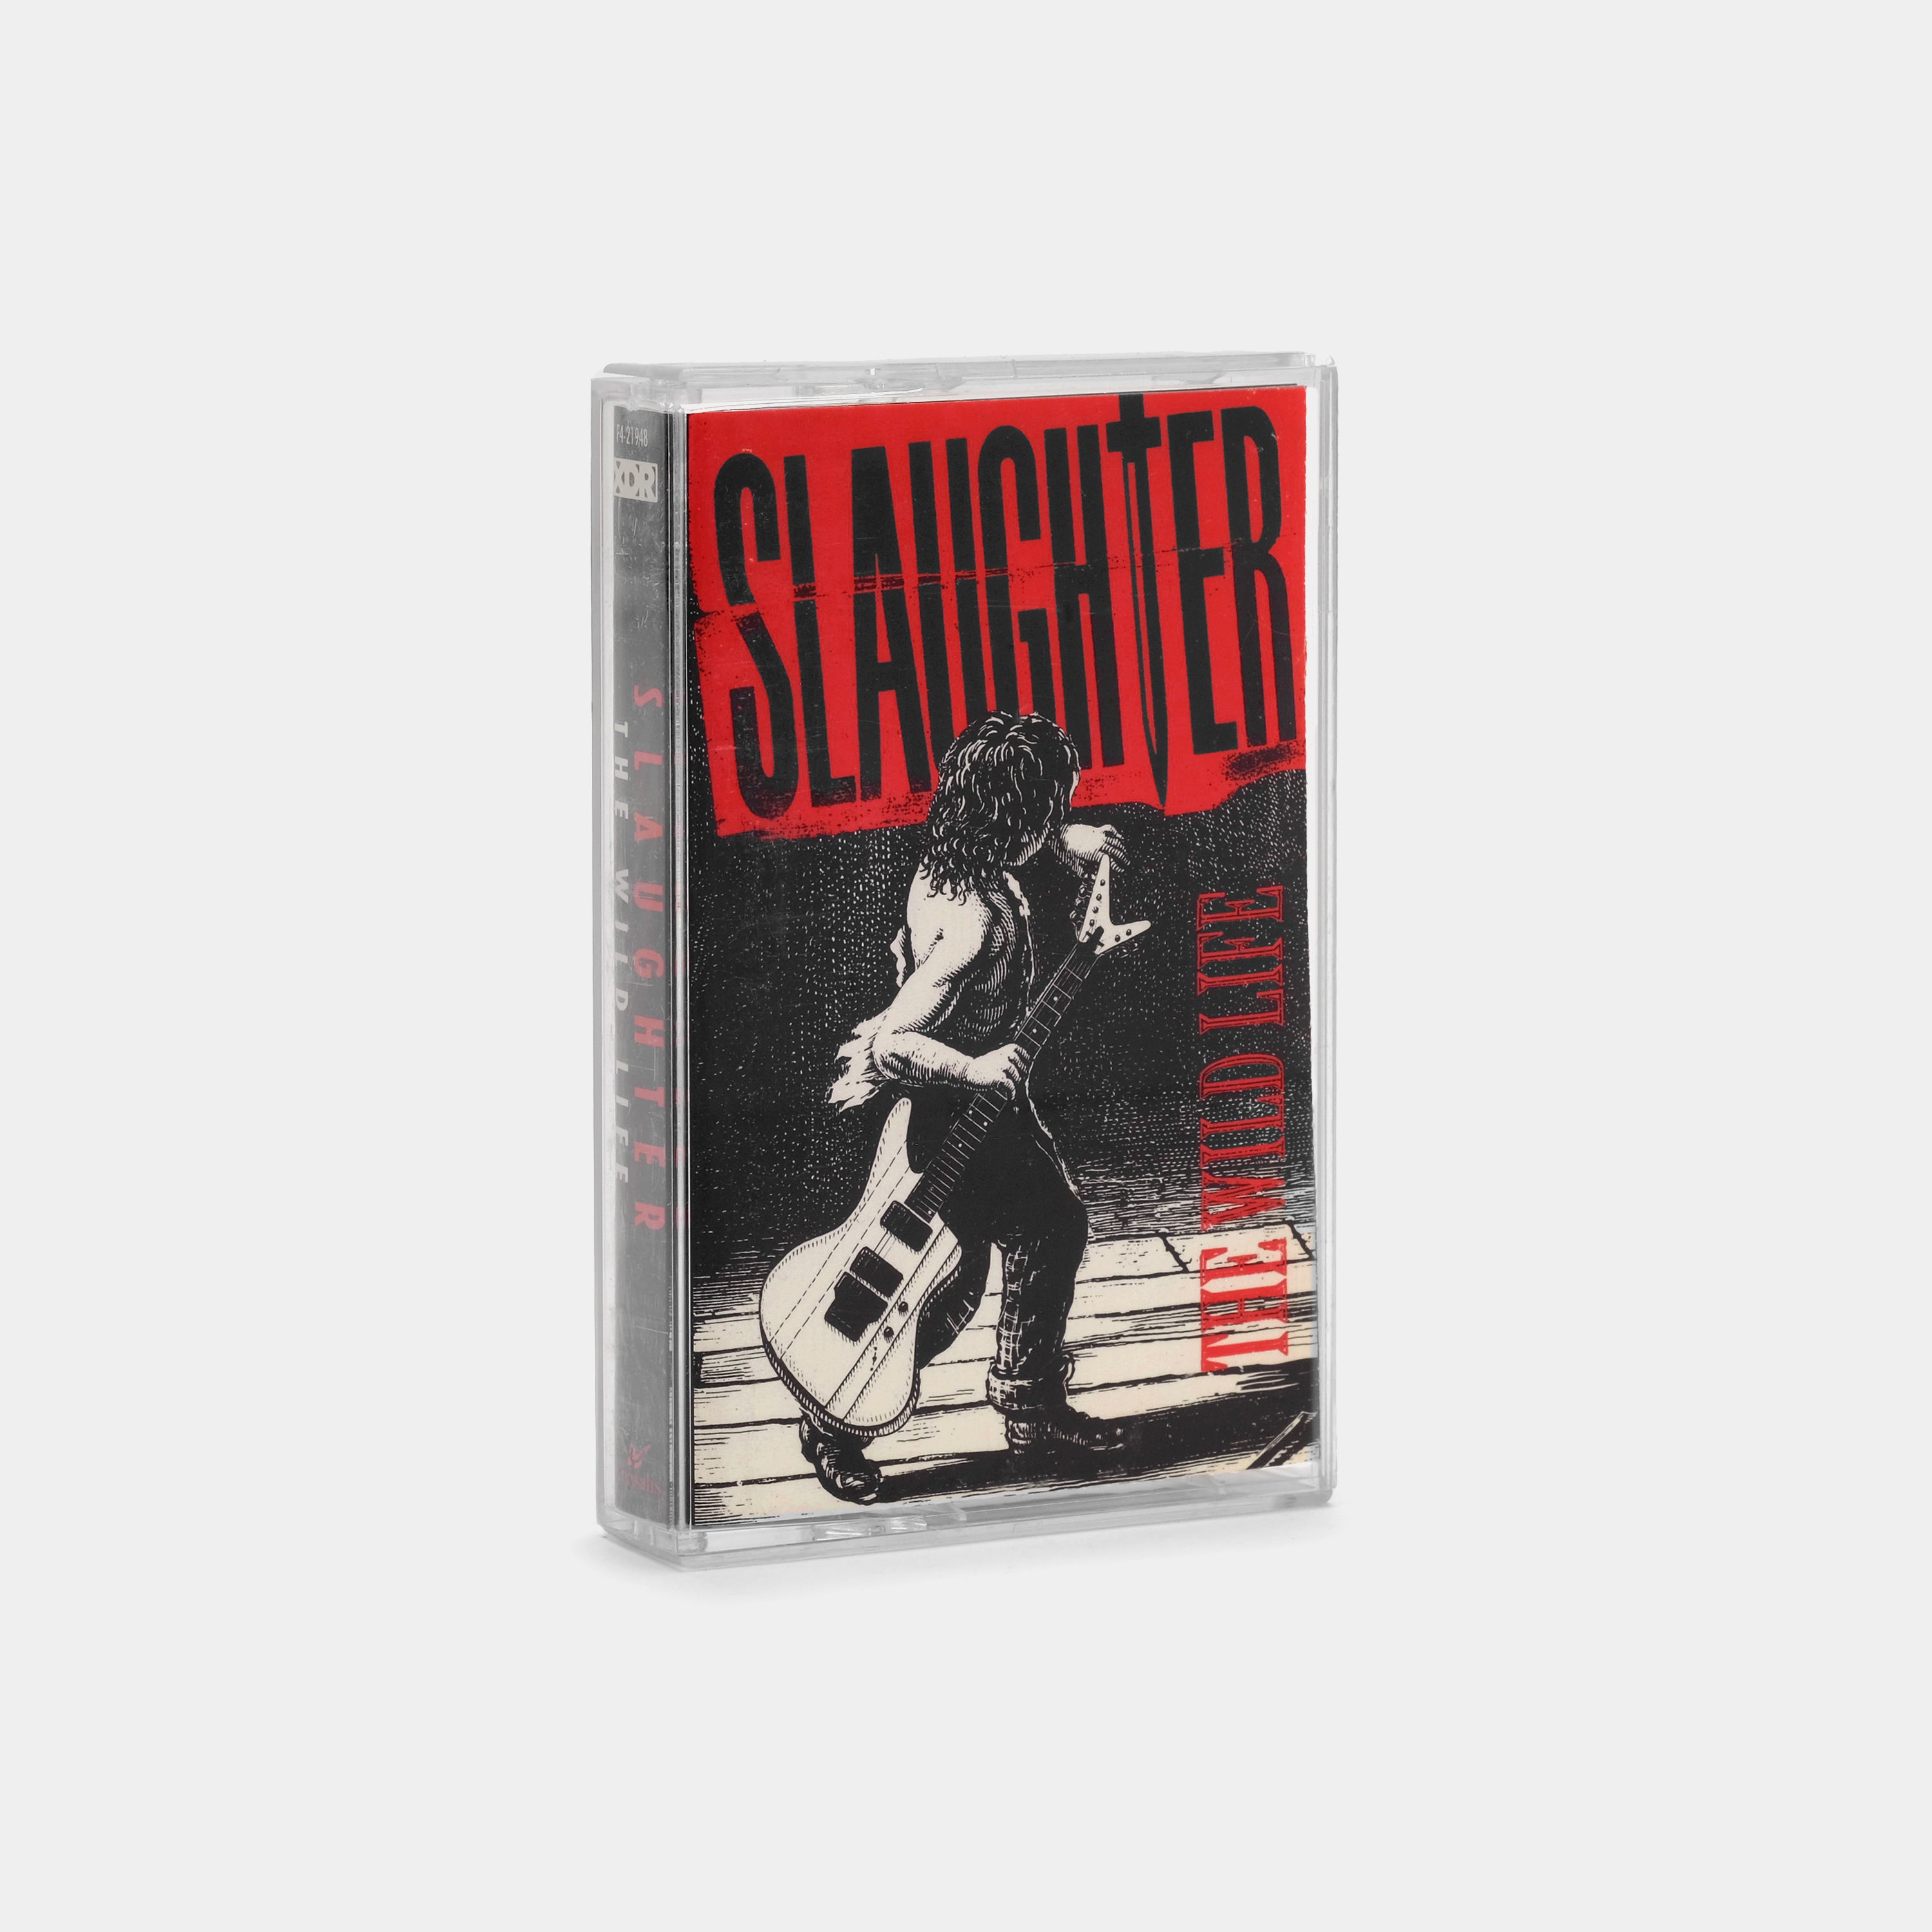 Slaughter - The Wild Life Cassette Tape